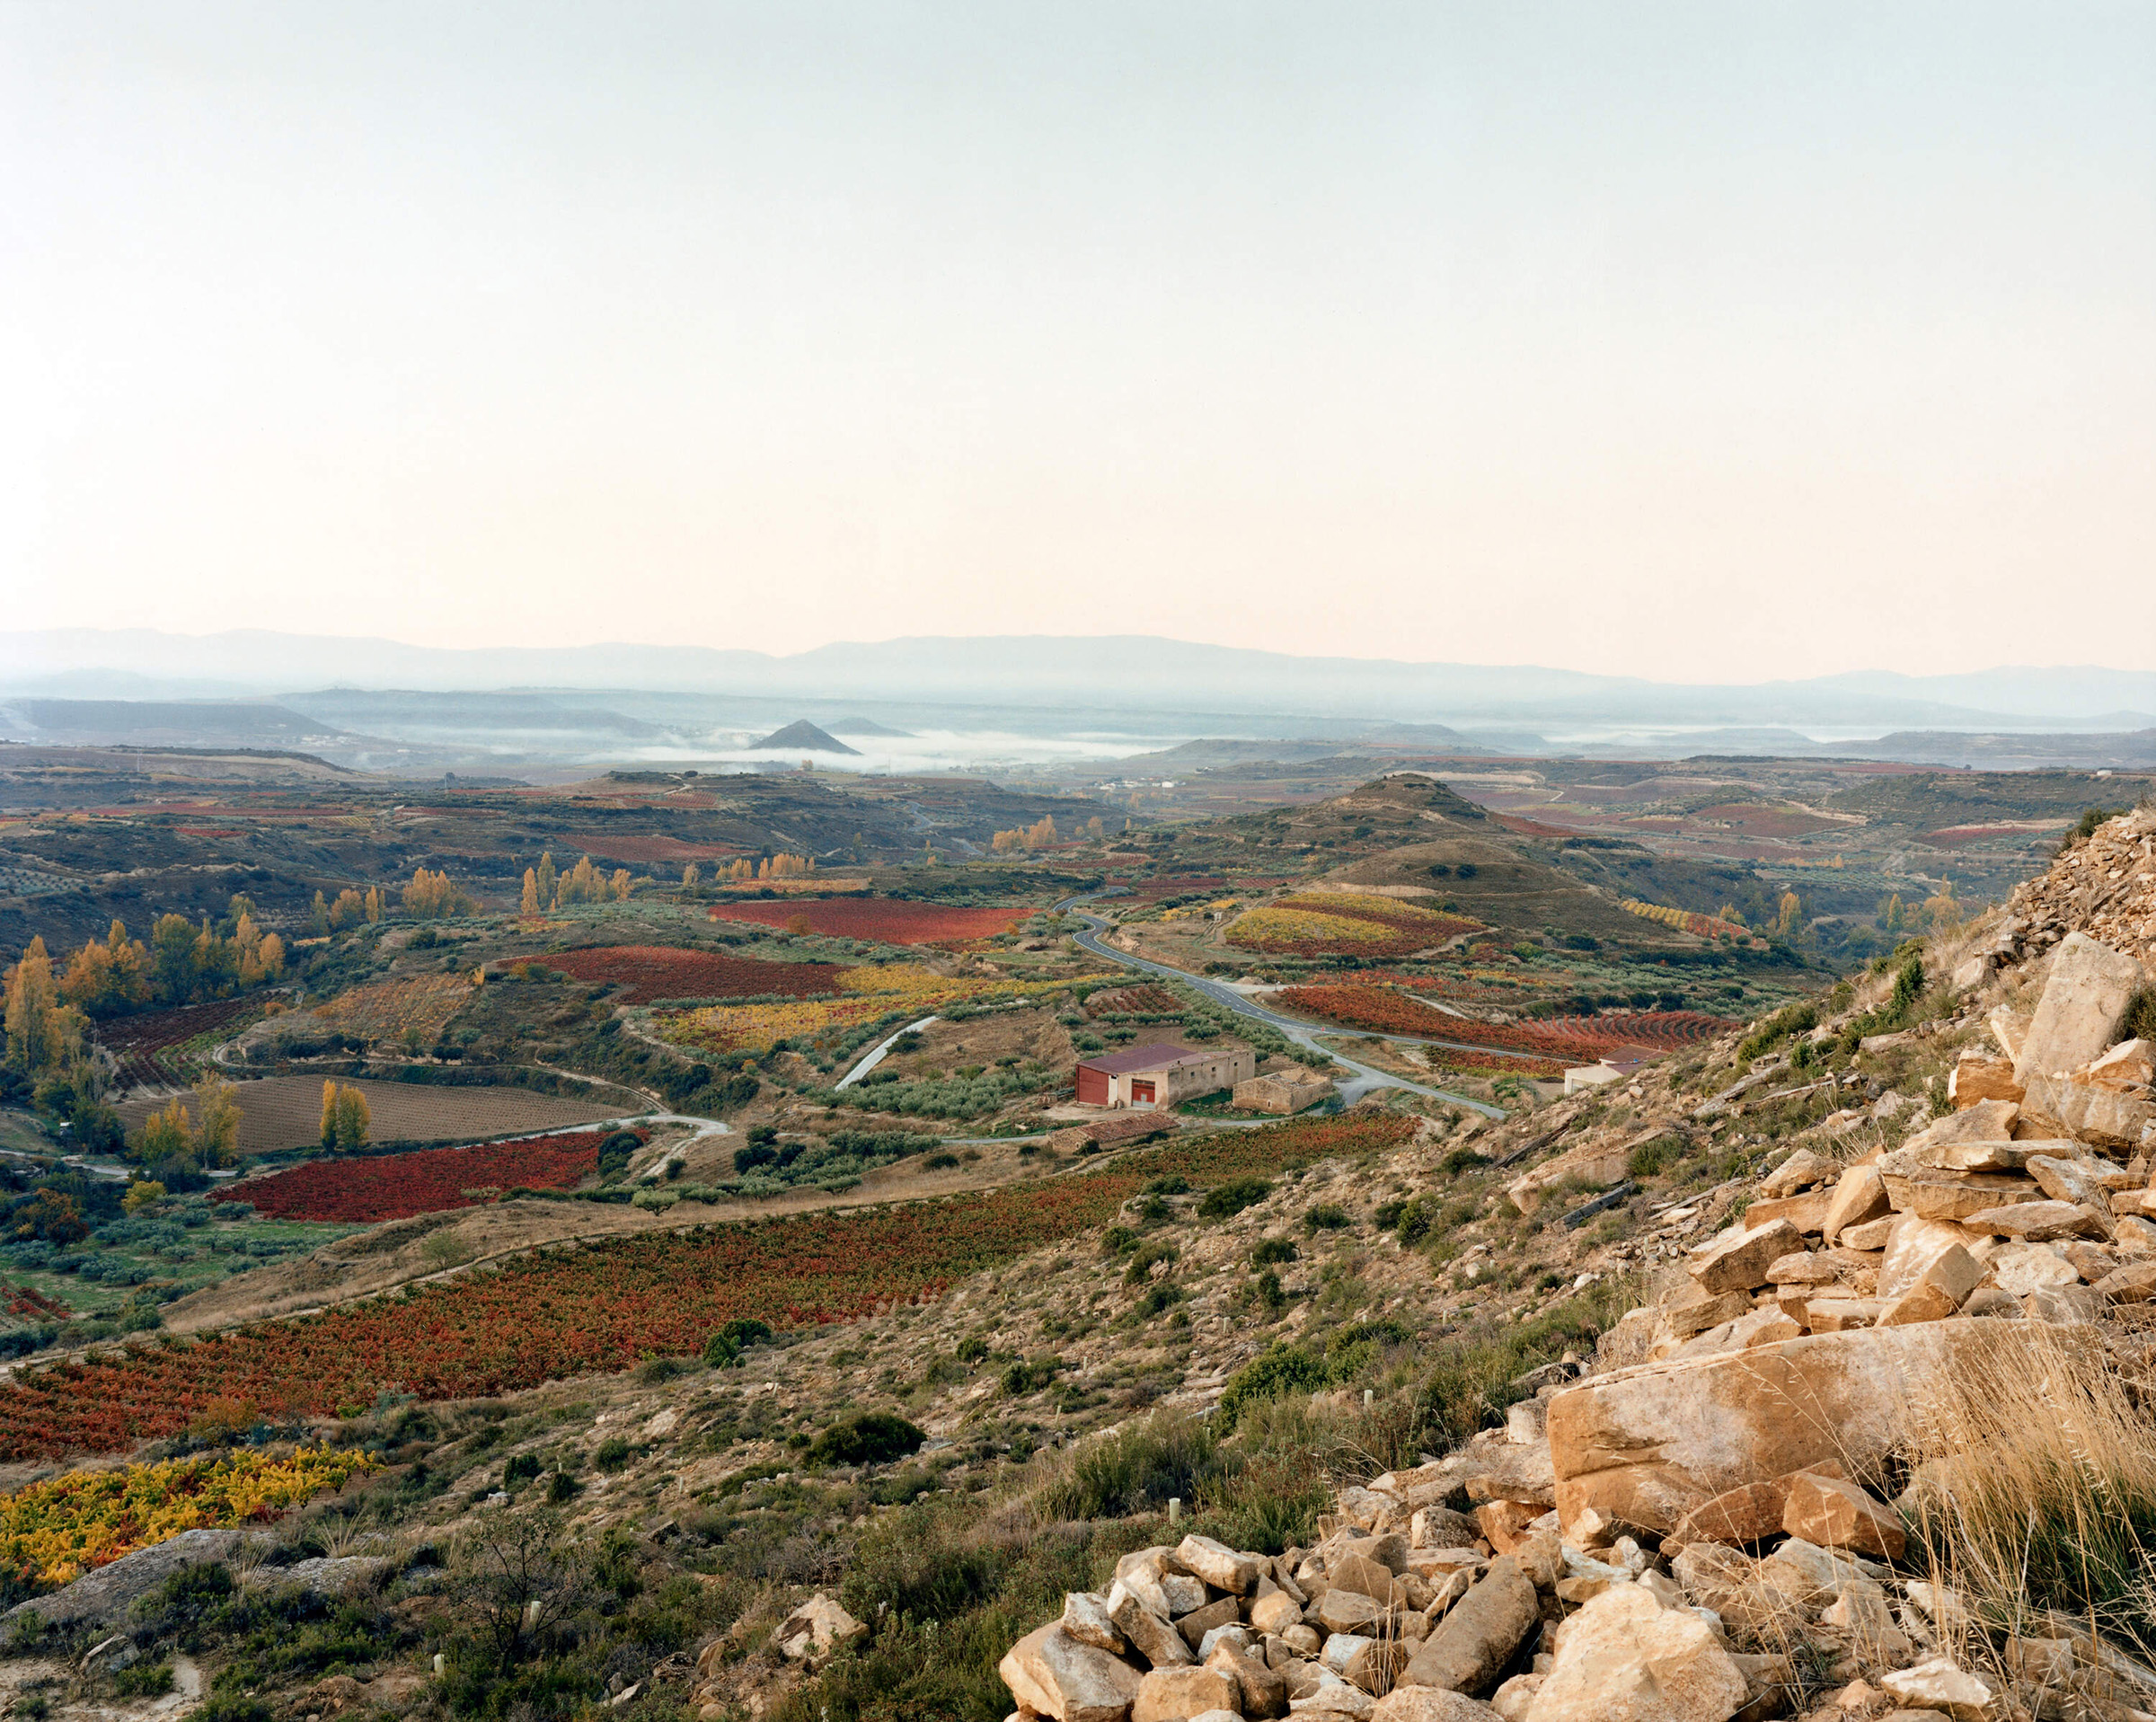 Ariel image of Rioja Alavesa vineyards.